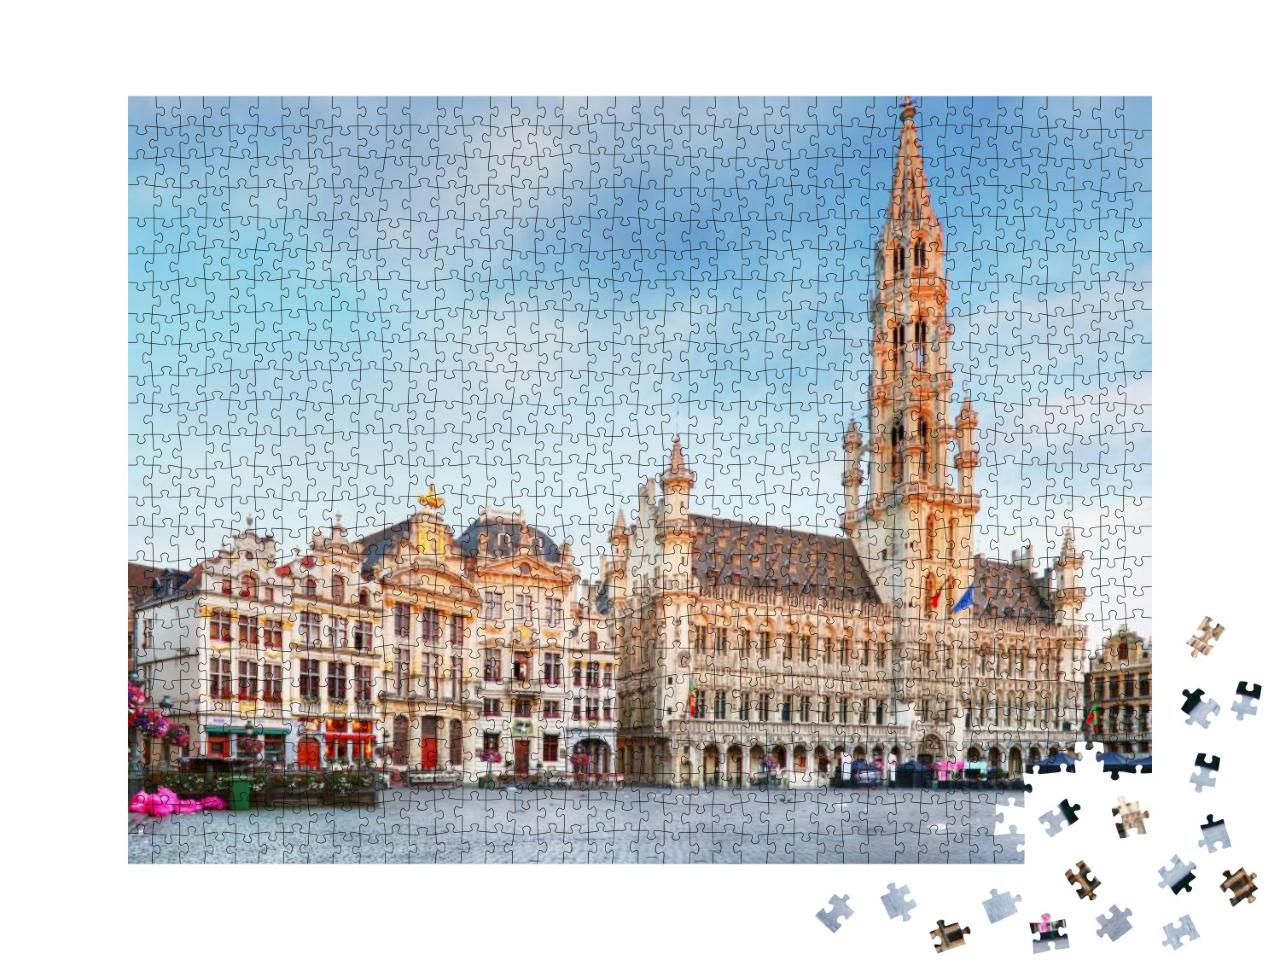 Puzzle 1000 Teile „Grand Place, Brüssel, Belgien“